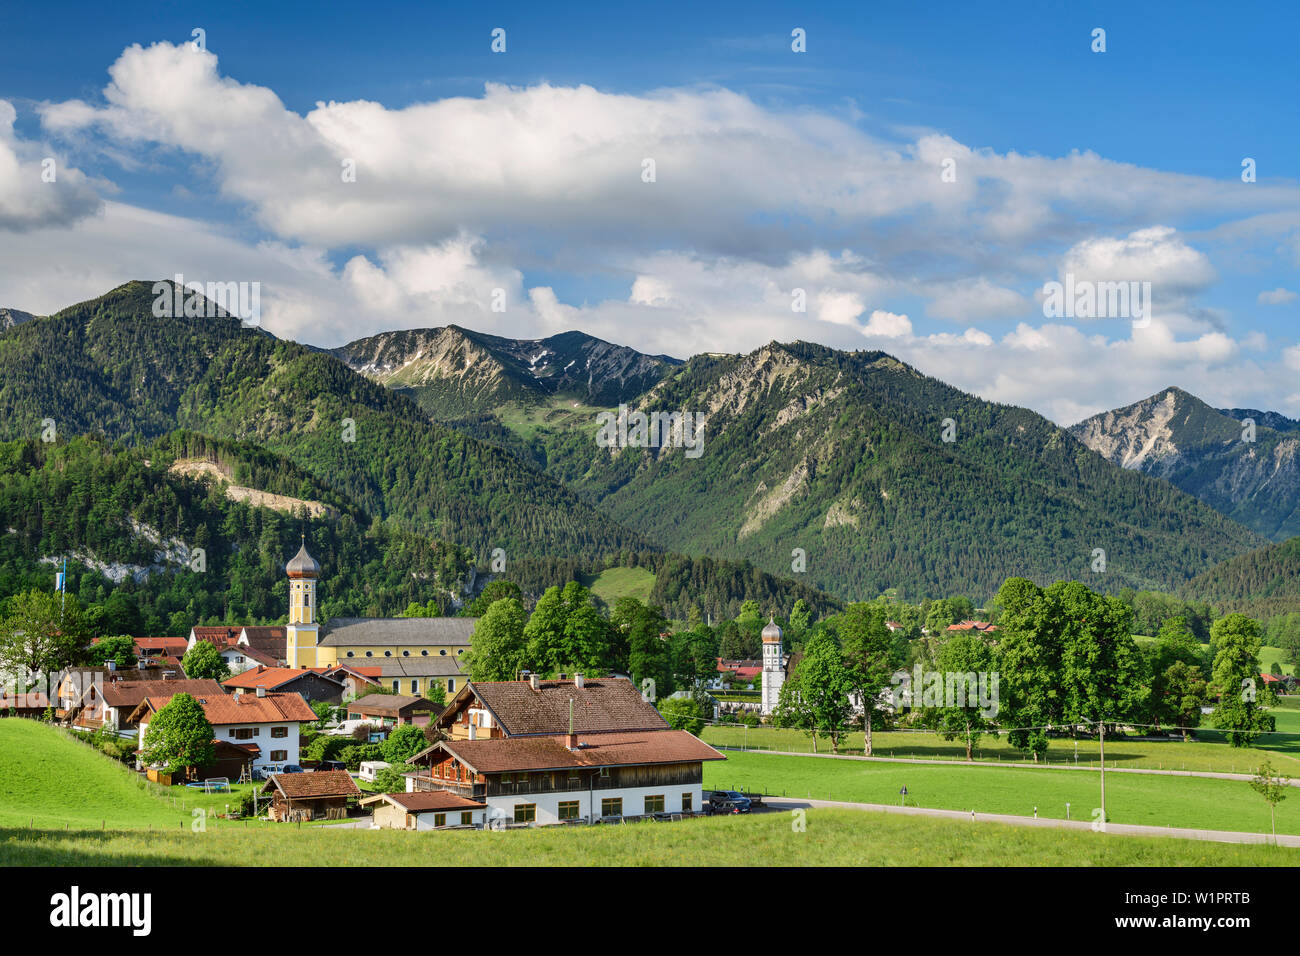 Village Fischbachau with Benzingspitze, Jaegerkamp and Brecherspitze in background, Fischbachau, valley of Leitzach, Mangfall Mountains, Bavarian Alps Stock Photo